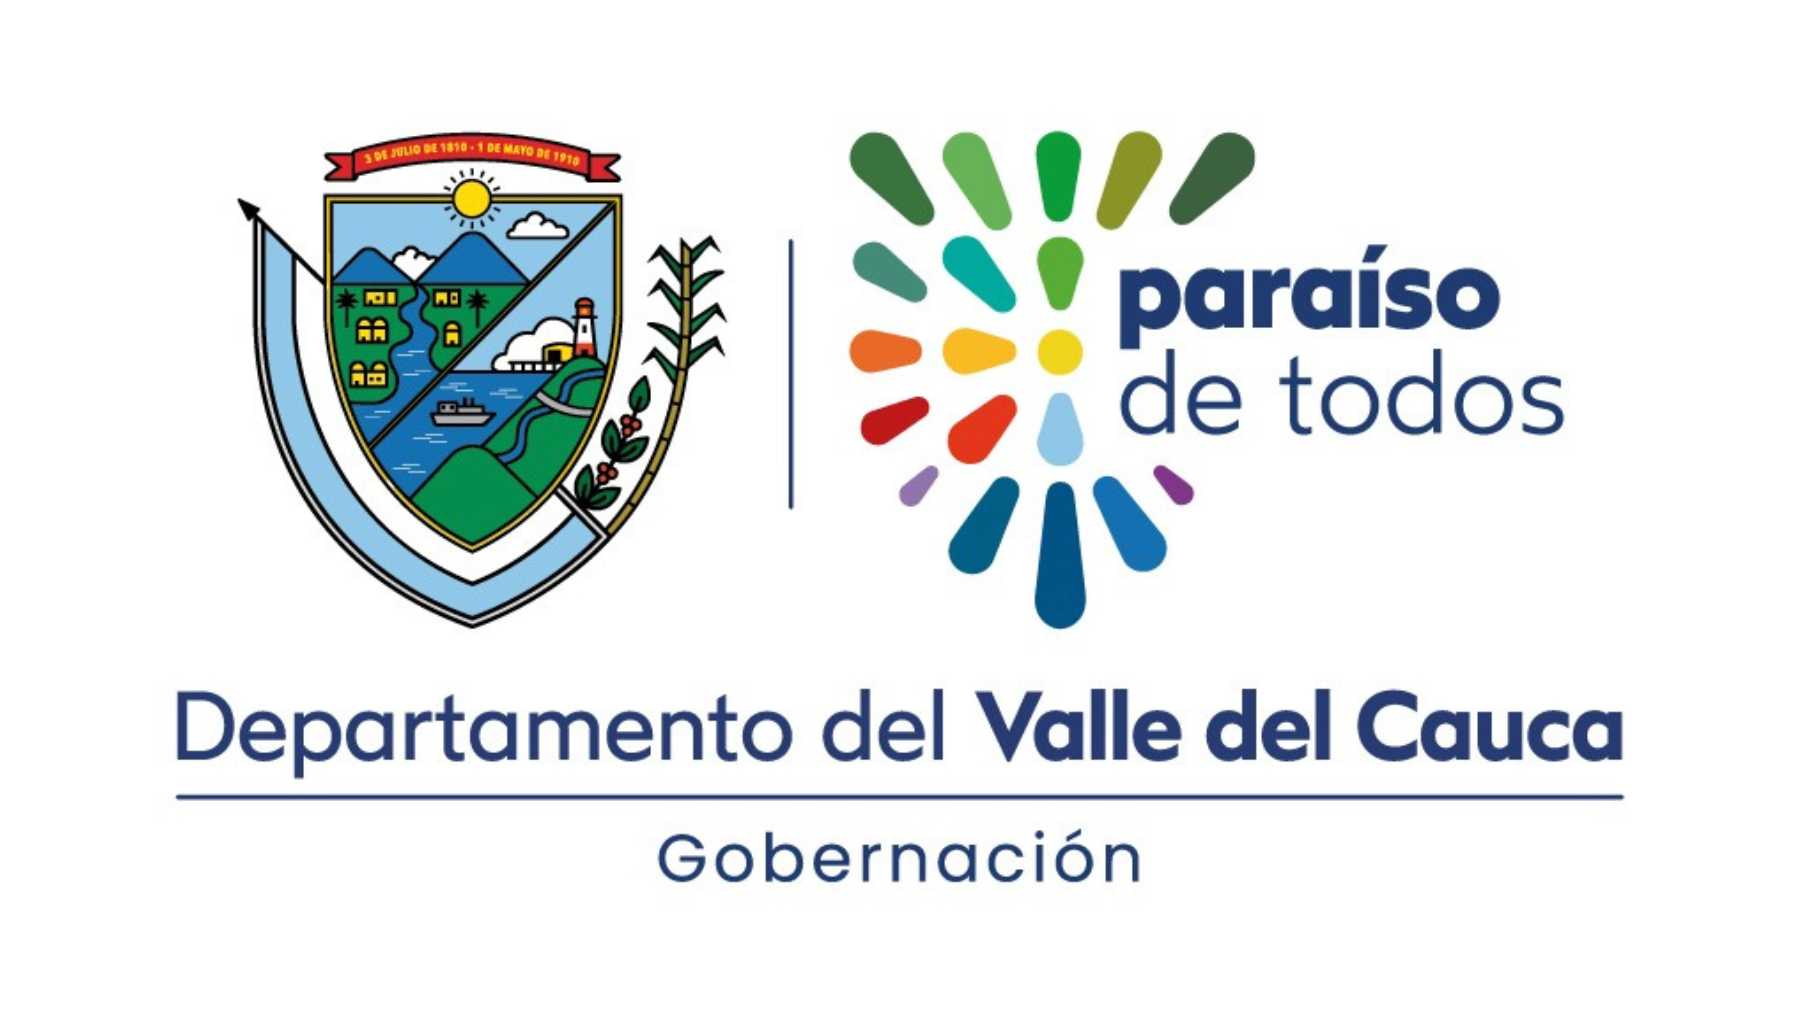 "Paraíso de todos": Gobernación del Valle presenta primera marca de departamento